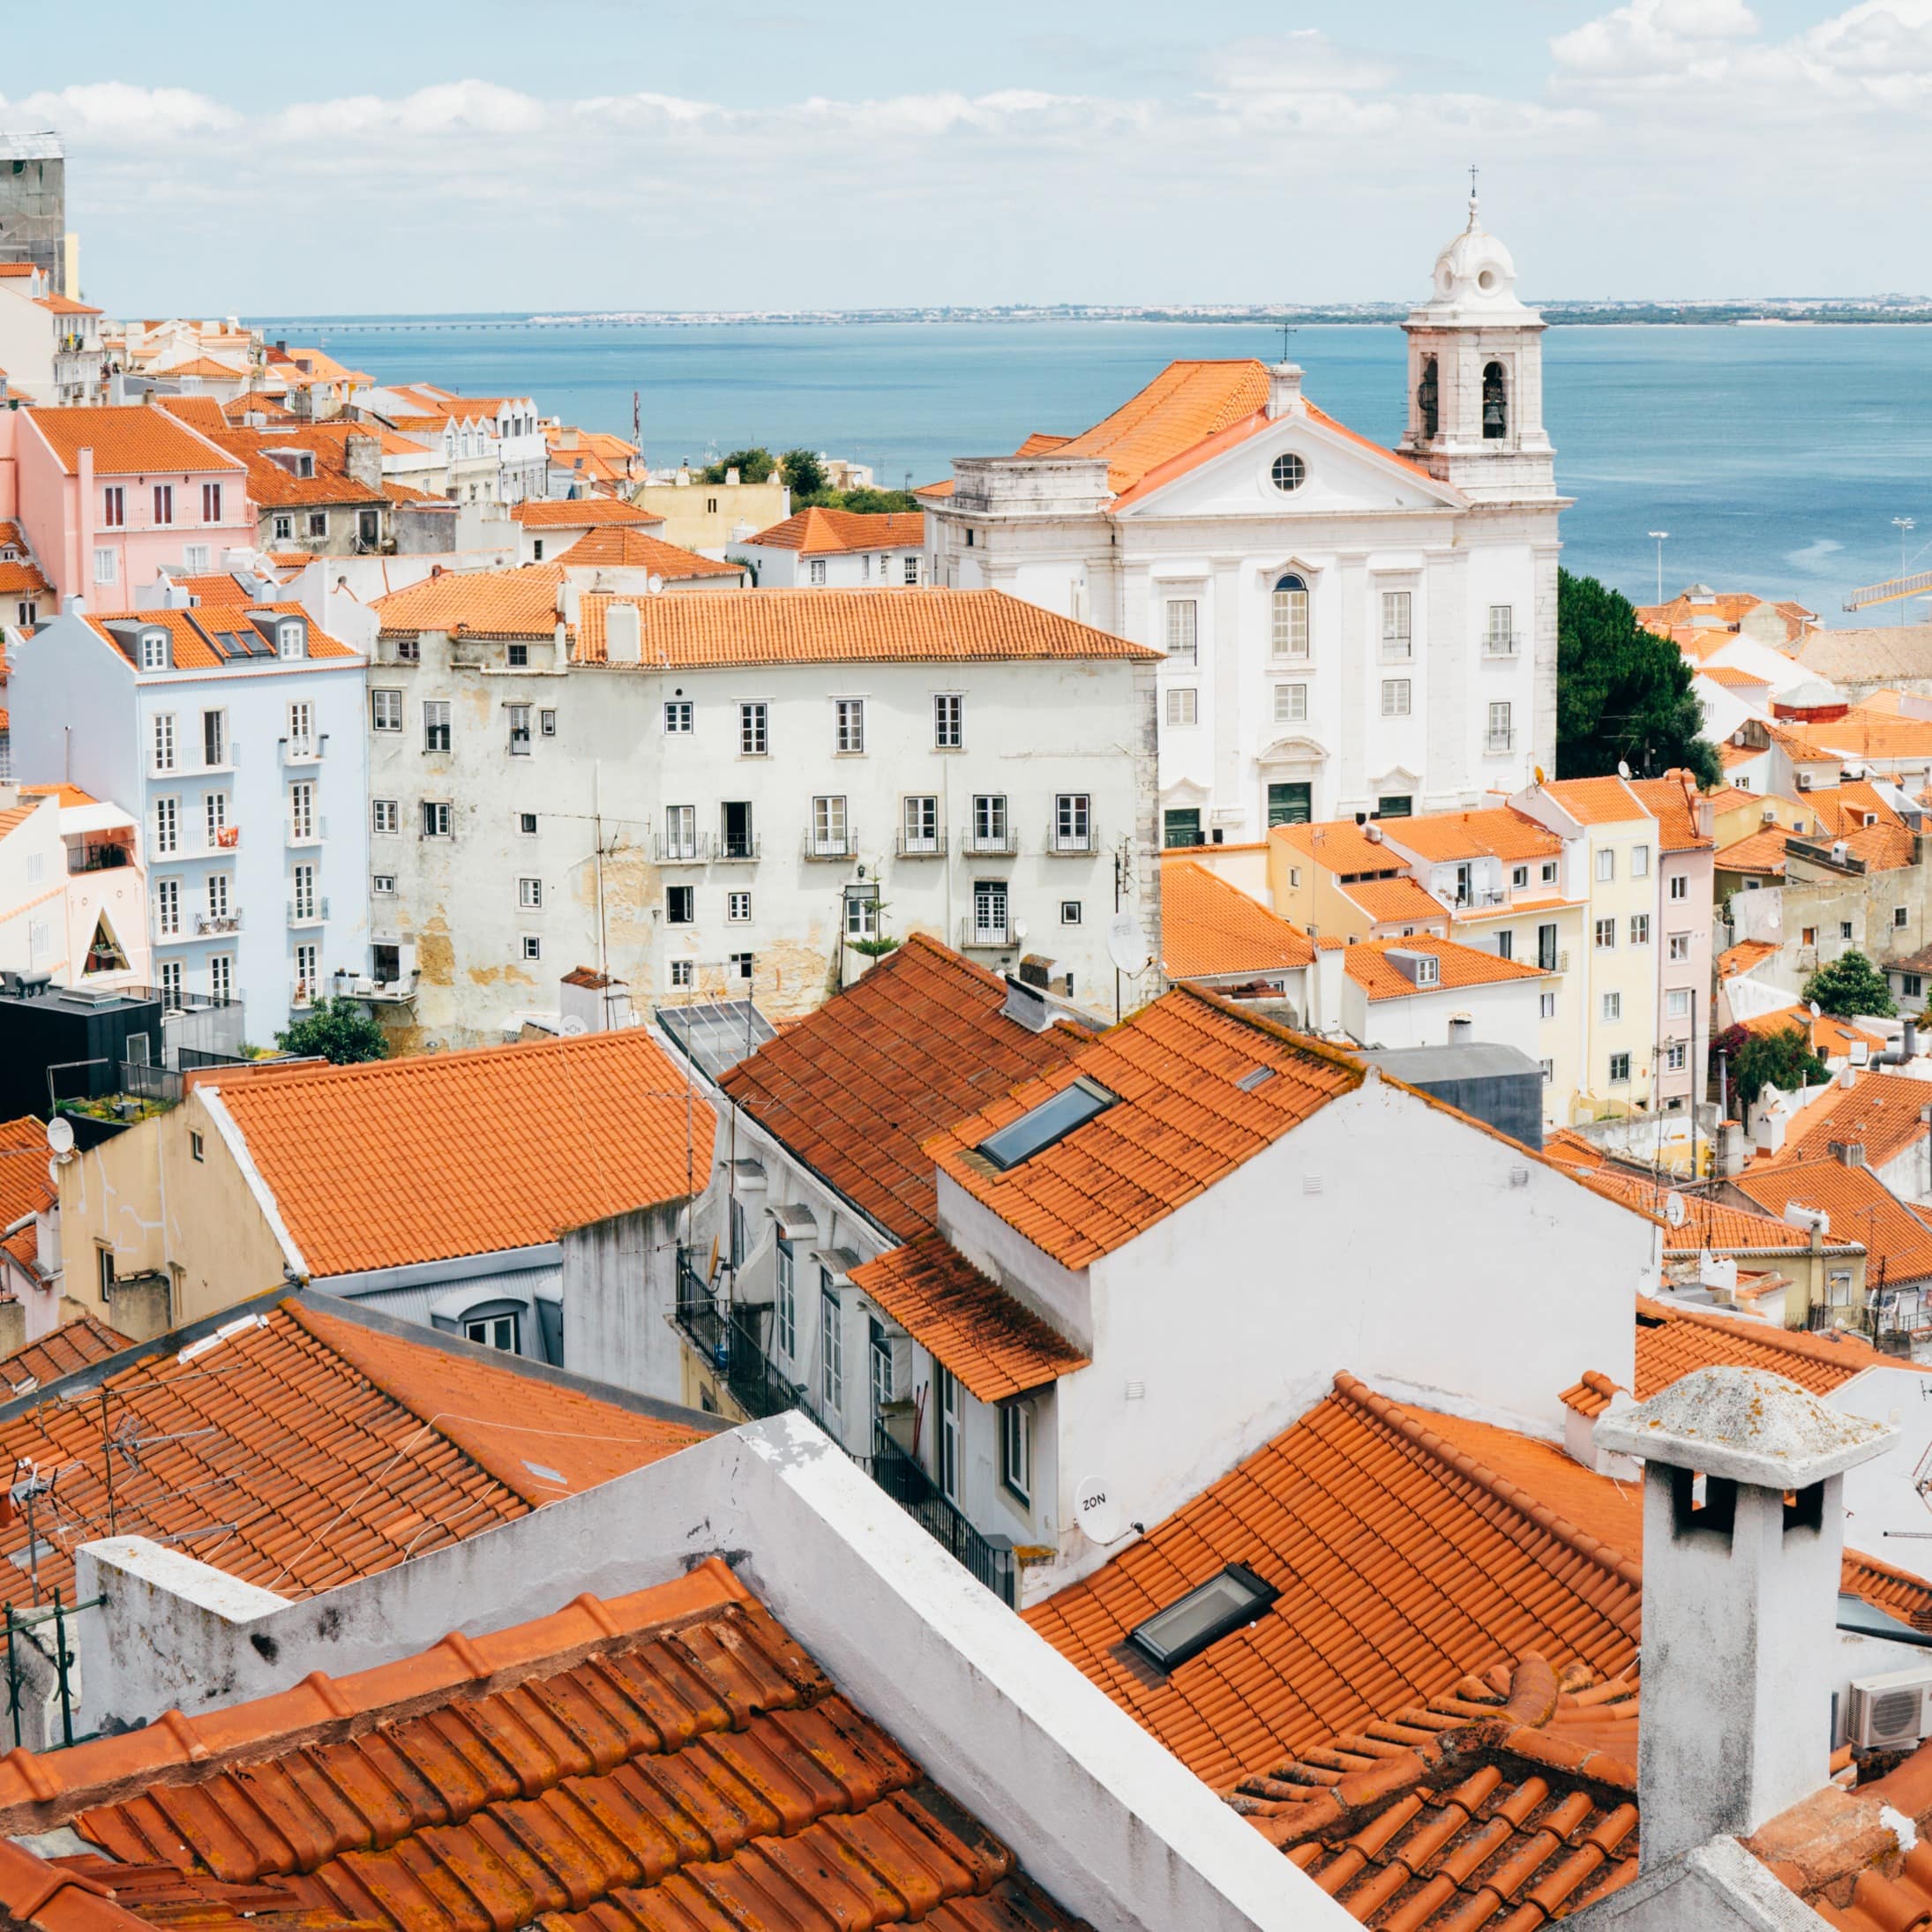 Location de vacances avec vue sur la mer à Lisbonne